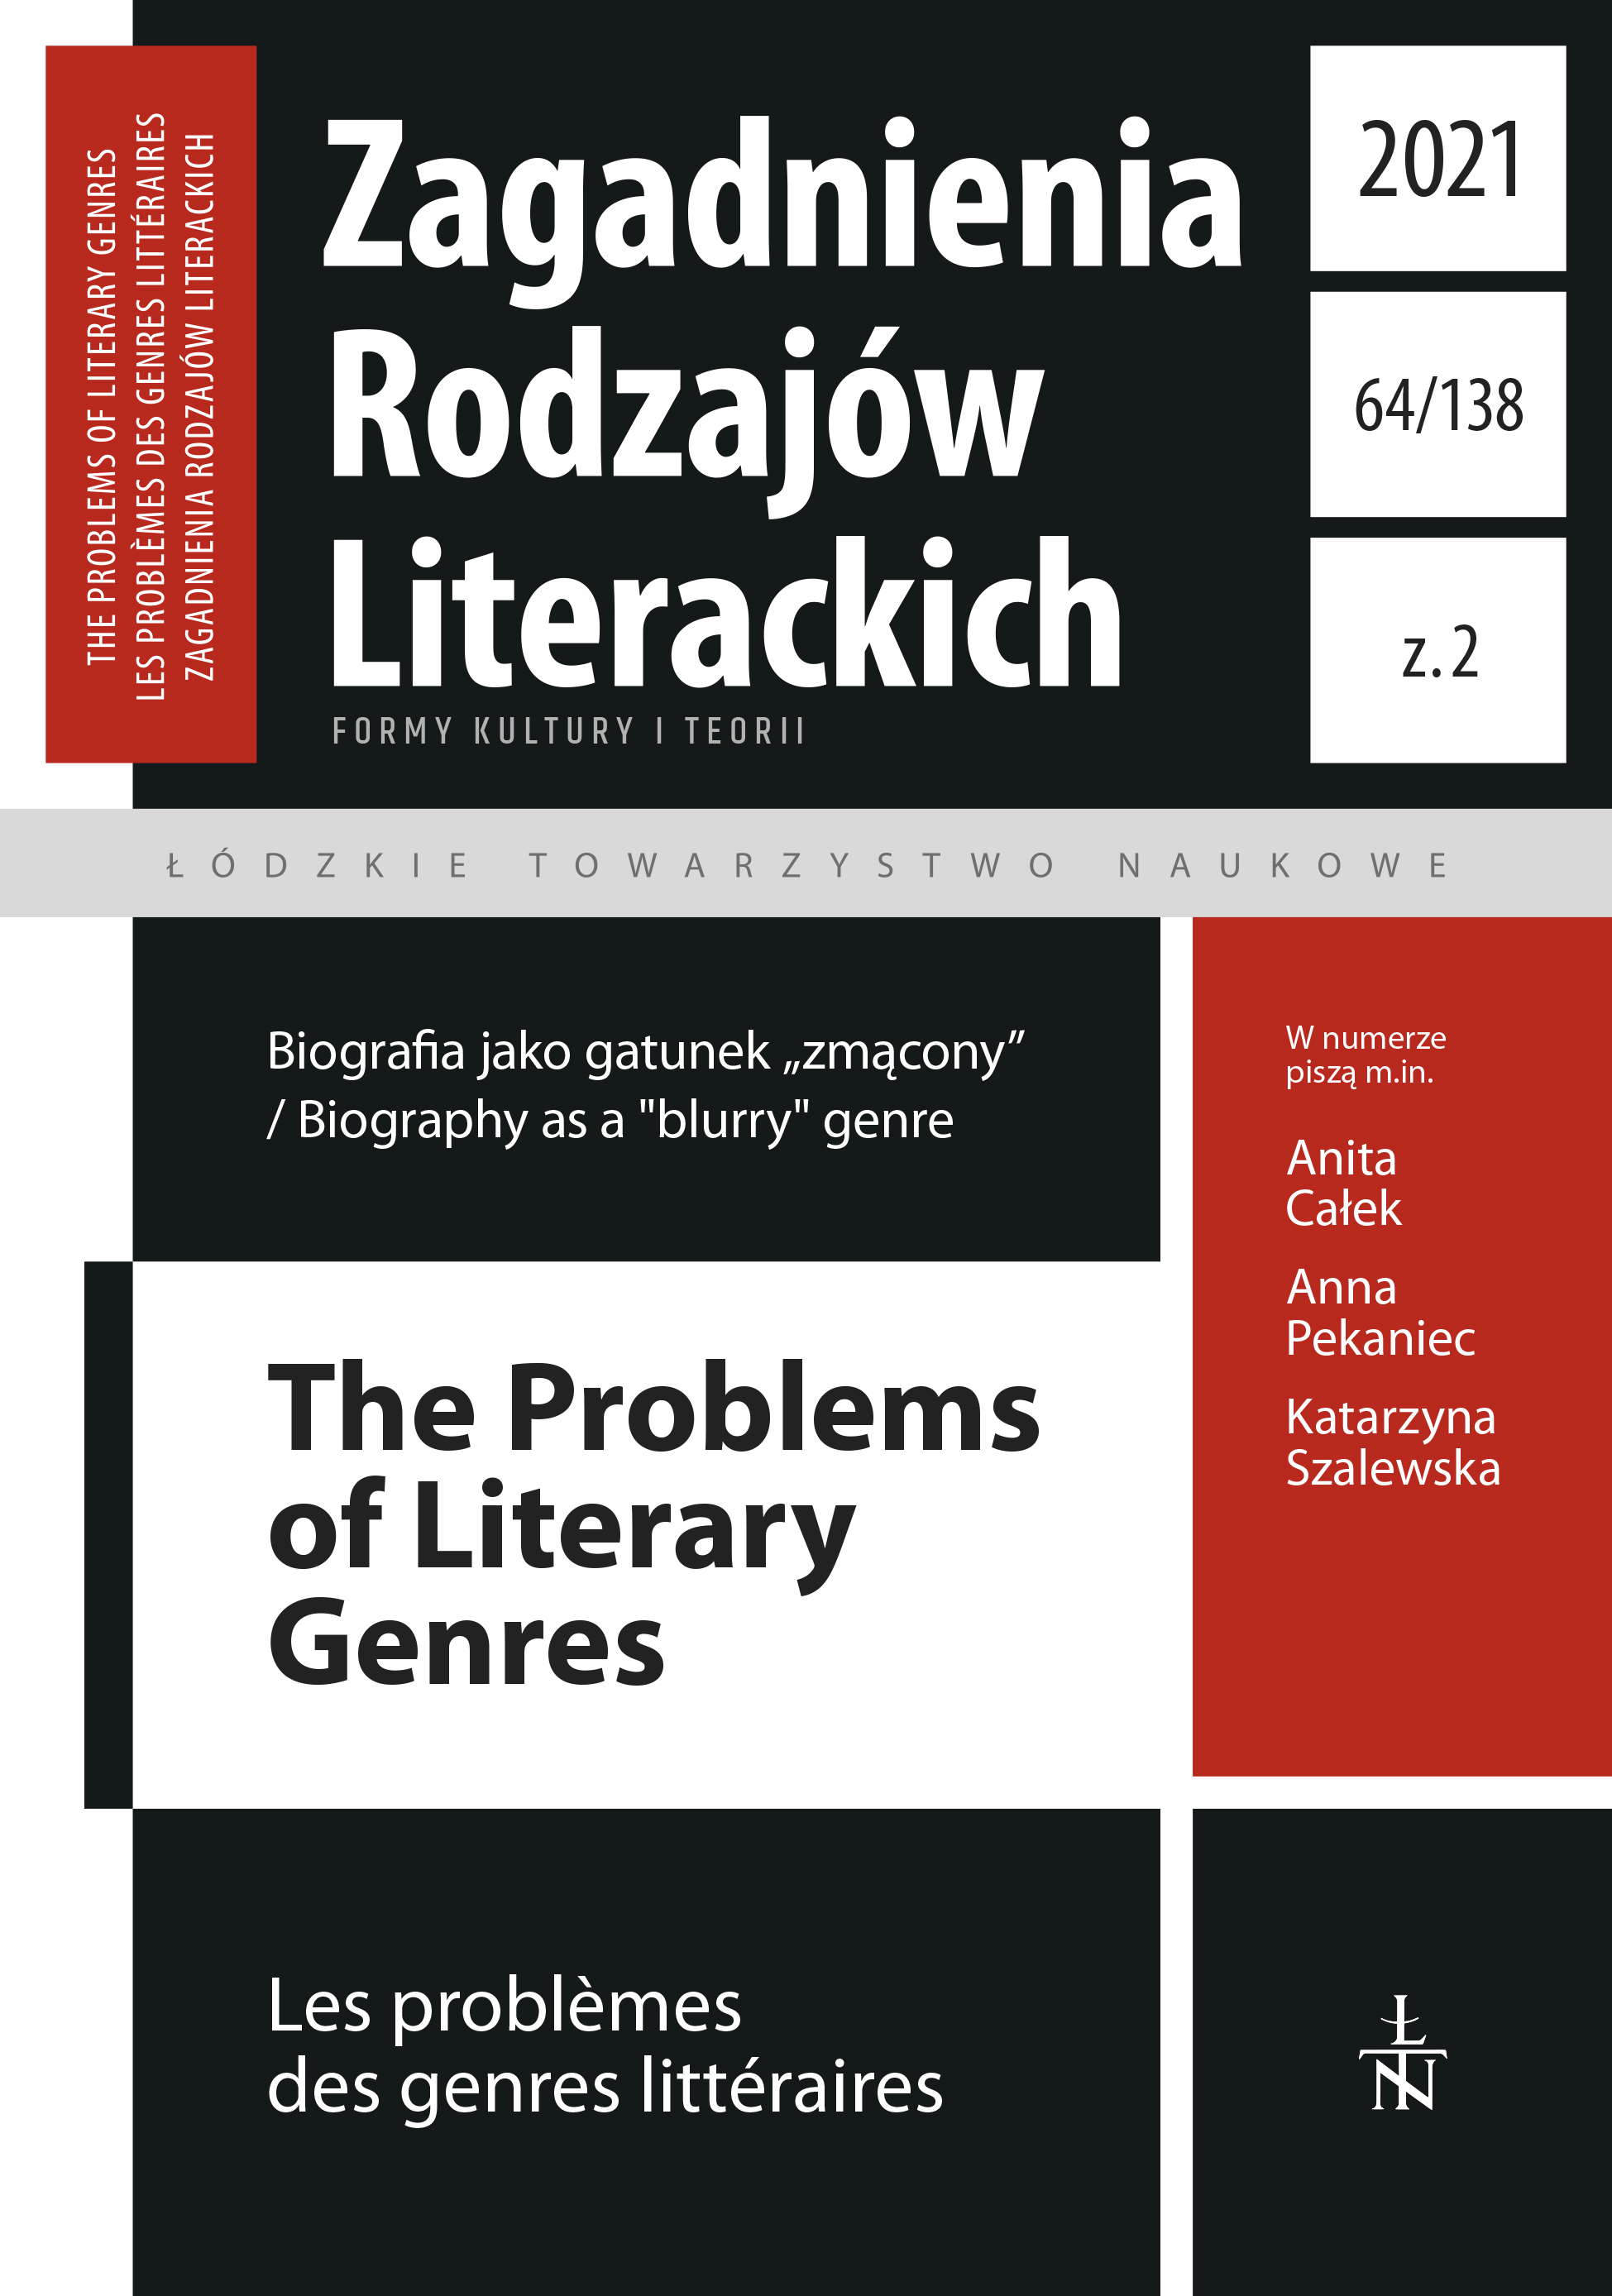 Próby biografii. Cztery strategie narracyjne w biografiach rosyjskich pisarzy autorstwa Wiktora Woroszylskiego